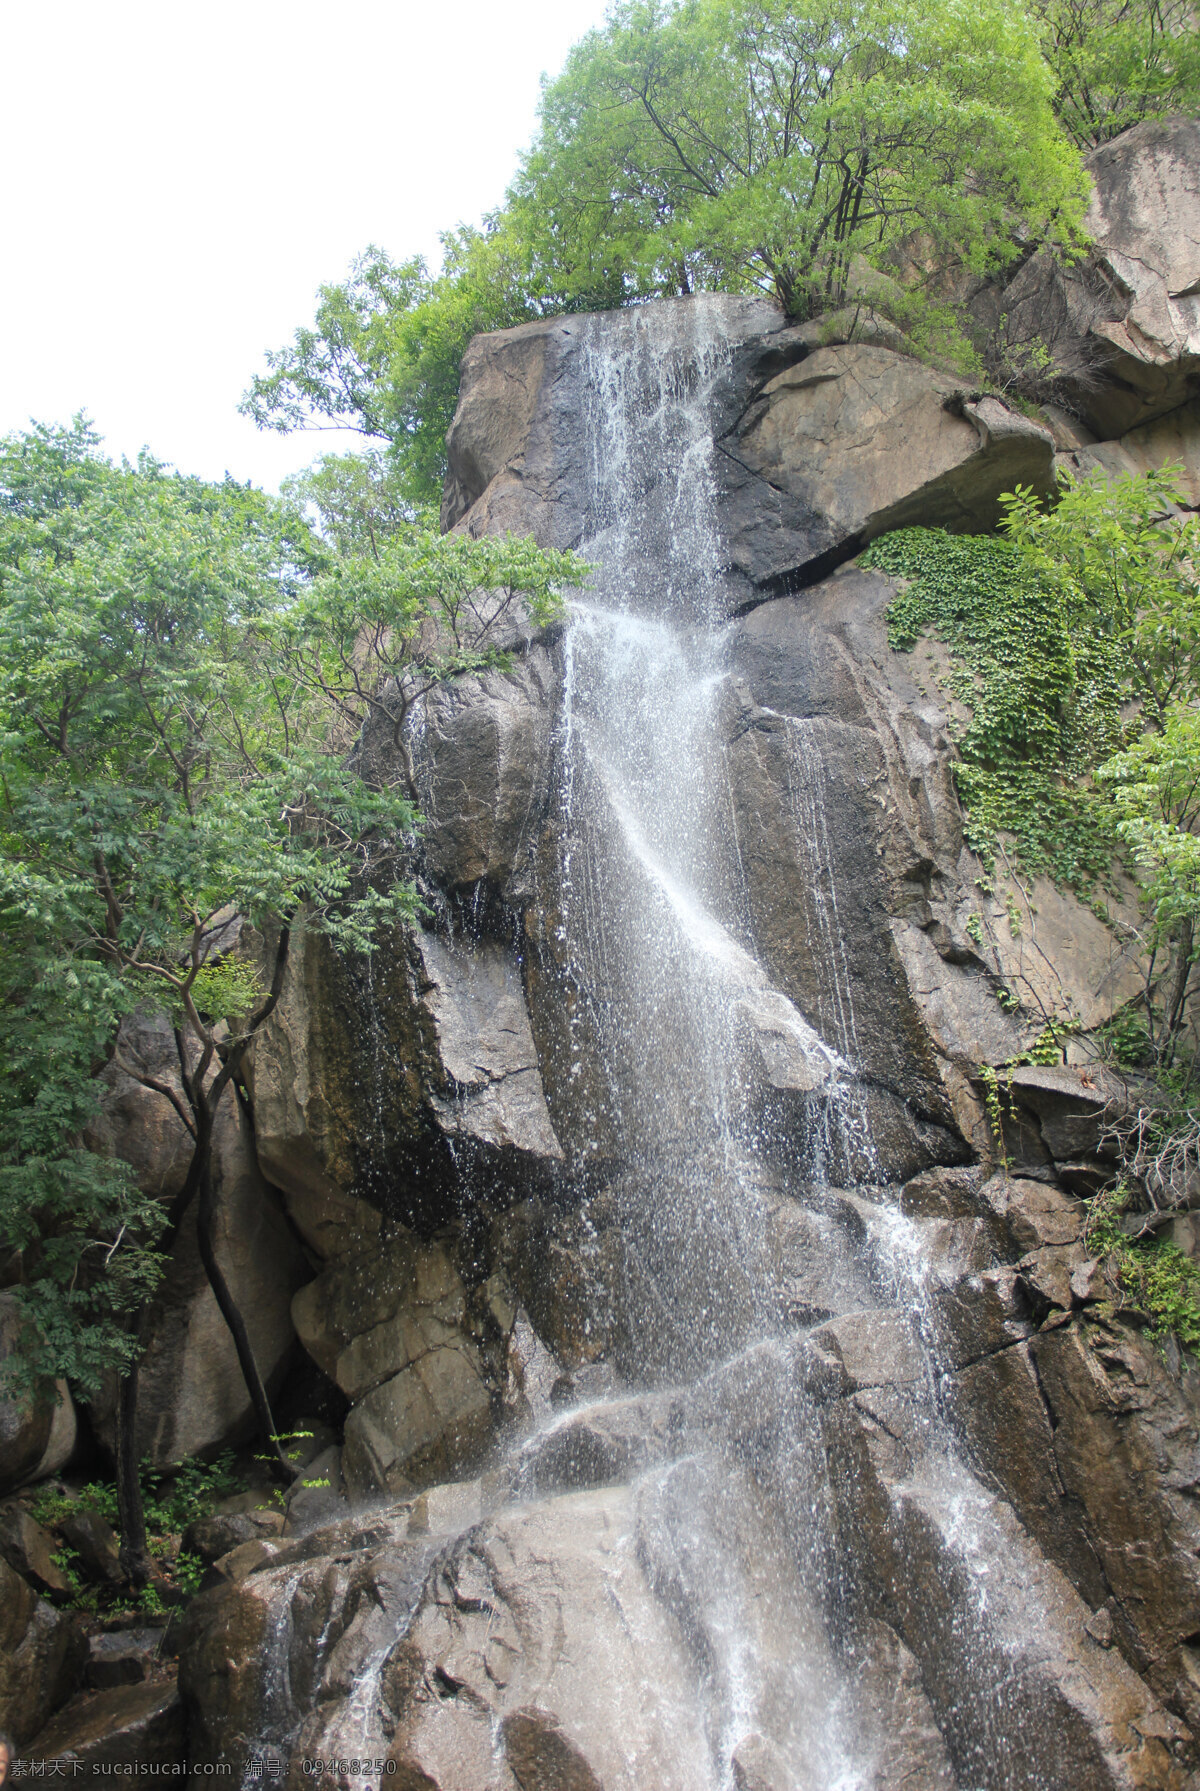 盘山山泉 2014年 5月 天津盘山 拍摄 山泉飞瀑 自然风景 旅游摄影